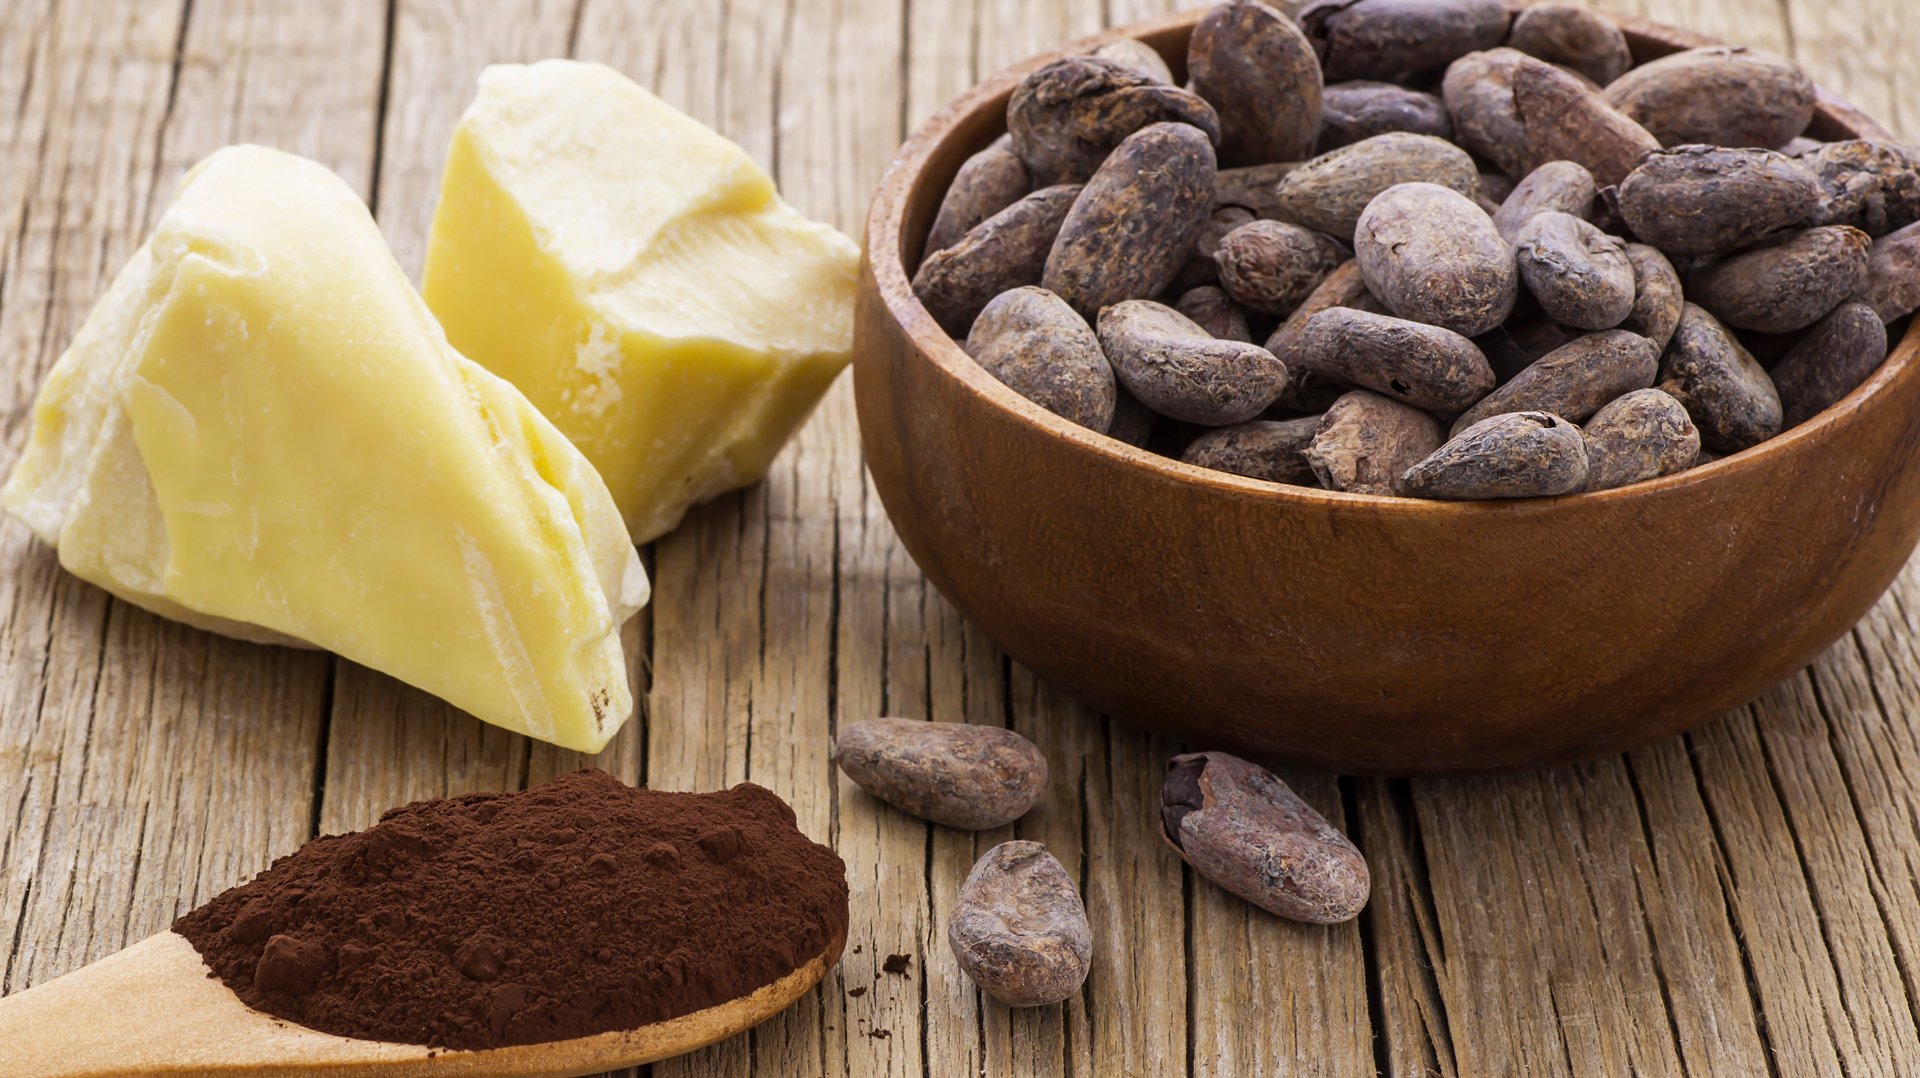 geröstete Kakaobohnen, Stücke von Kakaobutter, Kakaopulver